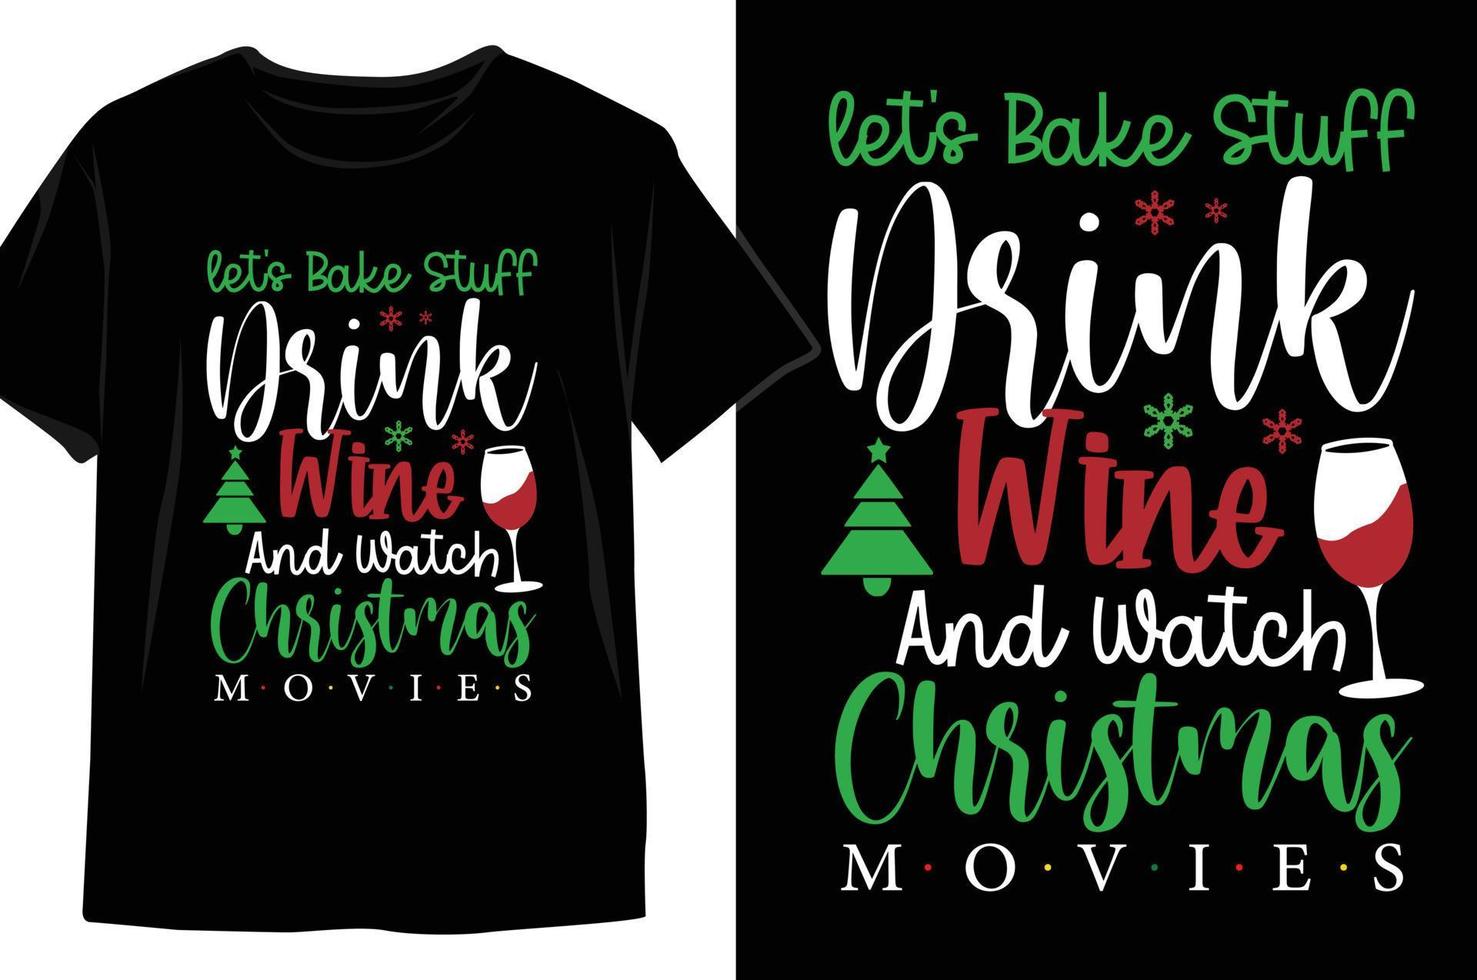 låt oss tillbaka grejer dryck vin och Kolla på jul bio jul t skjorta design vektor